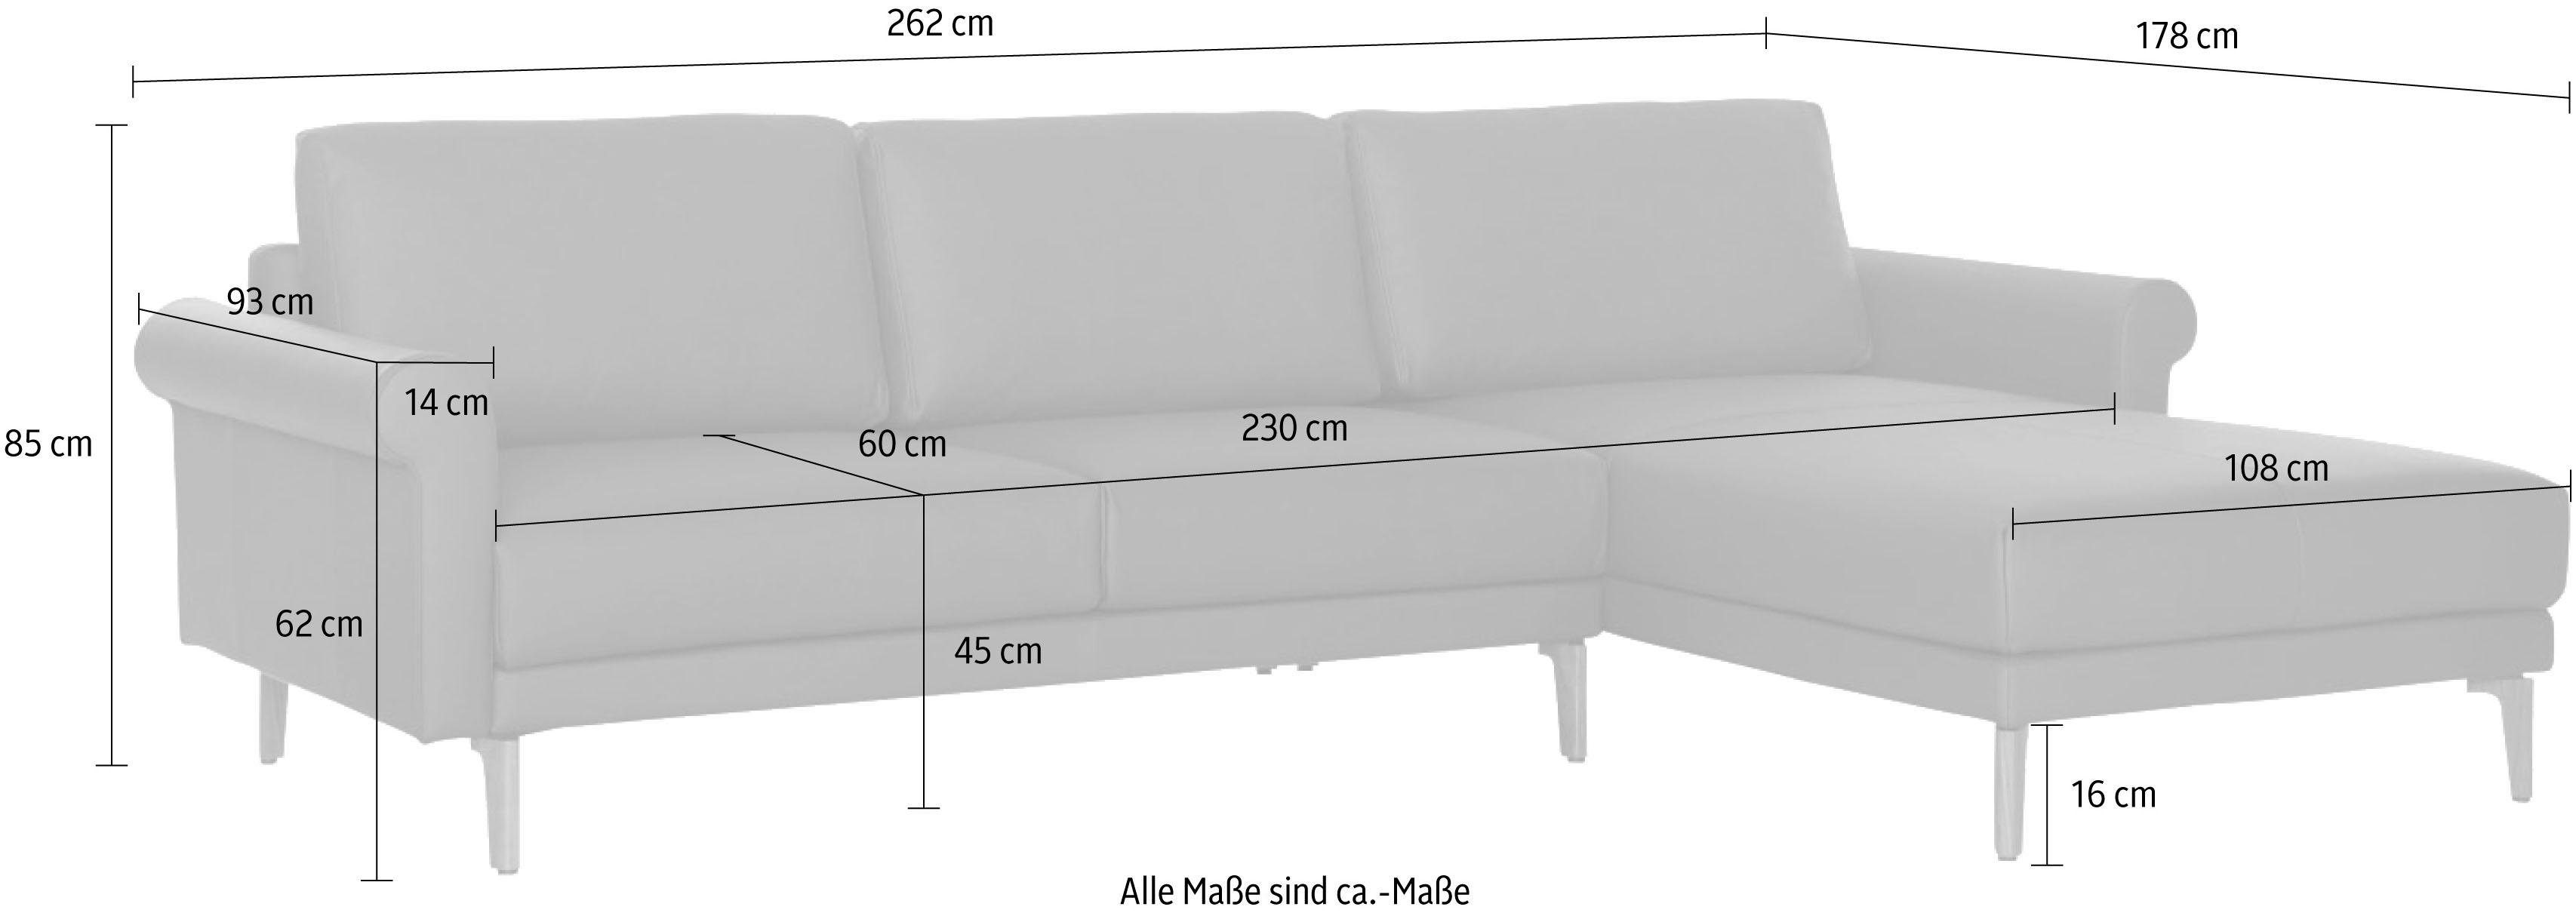 hülsta sofa Ecksofa hs.450, Landhaus, Schnecke Armlehne Nussbaum modern Fuß cm, 262 Breite